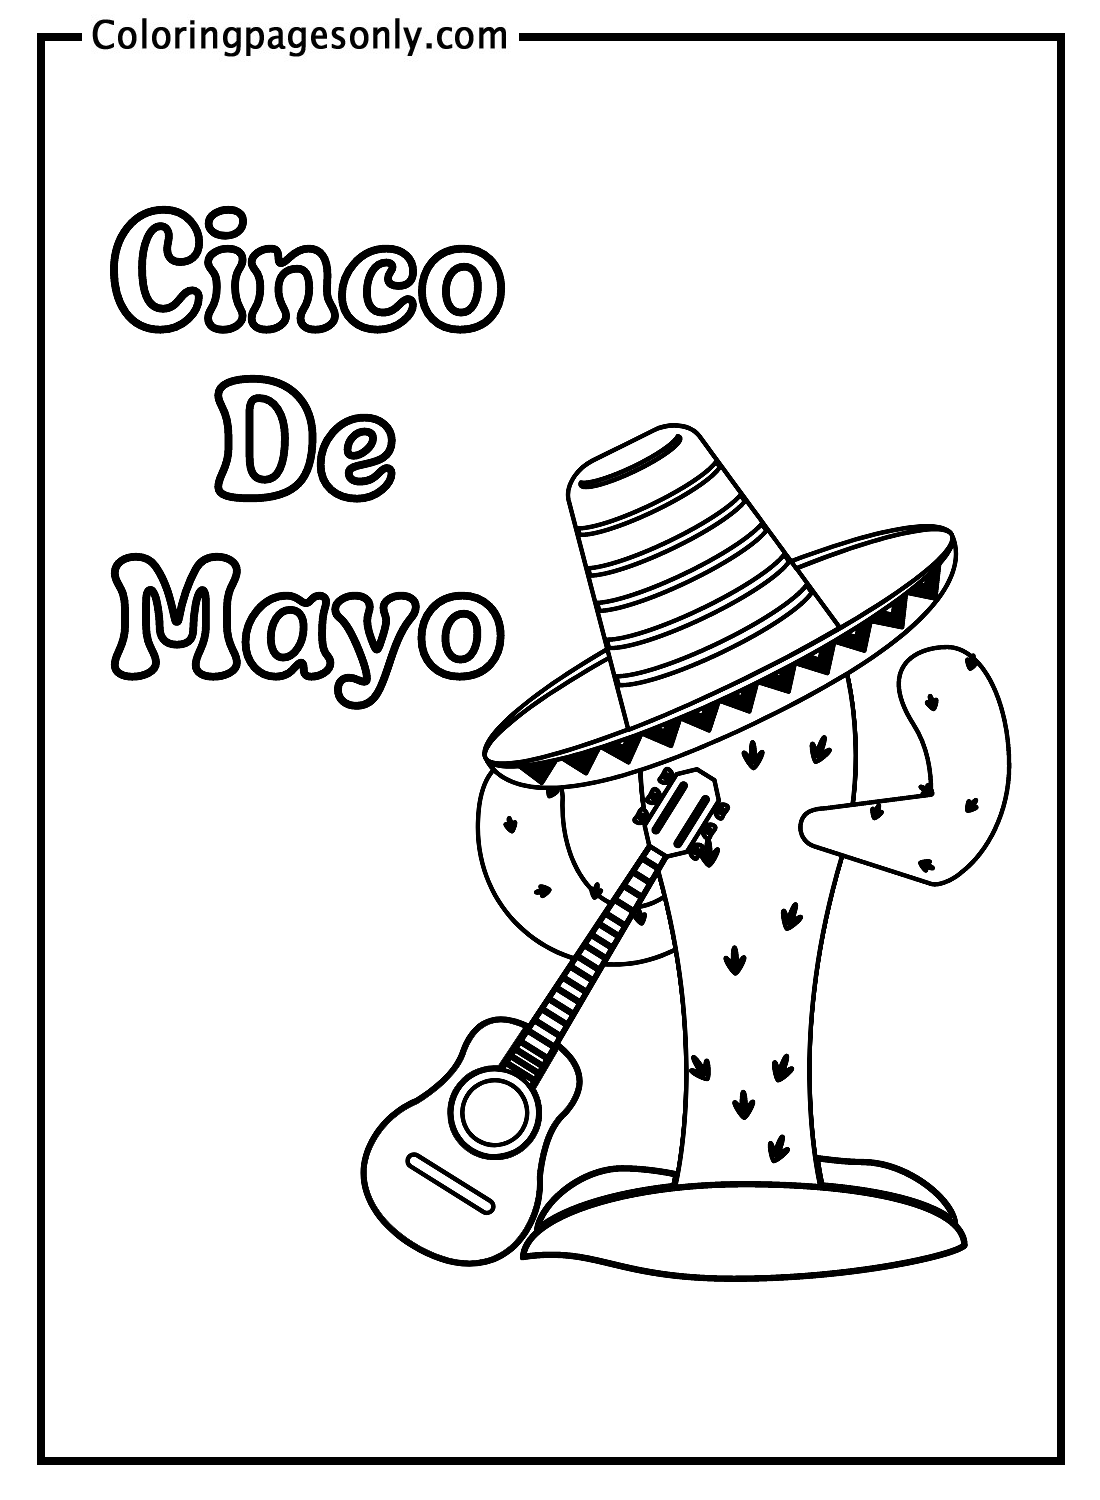 仙人掌和墨西哥帽子与吉他来自五月五日节